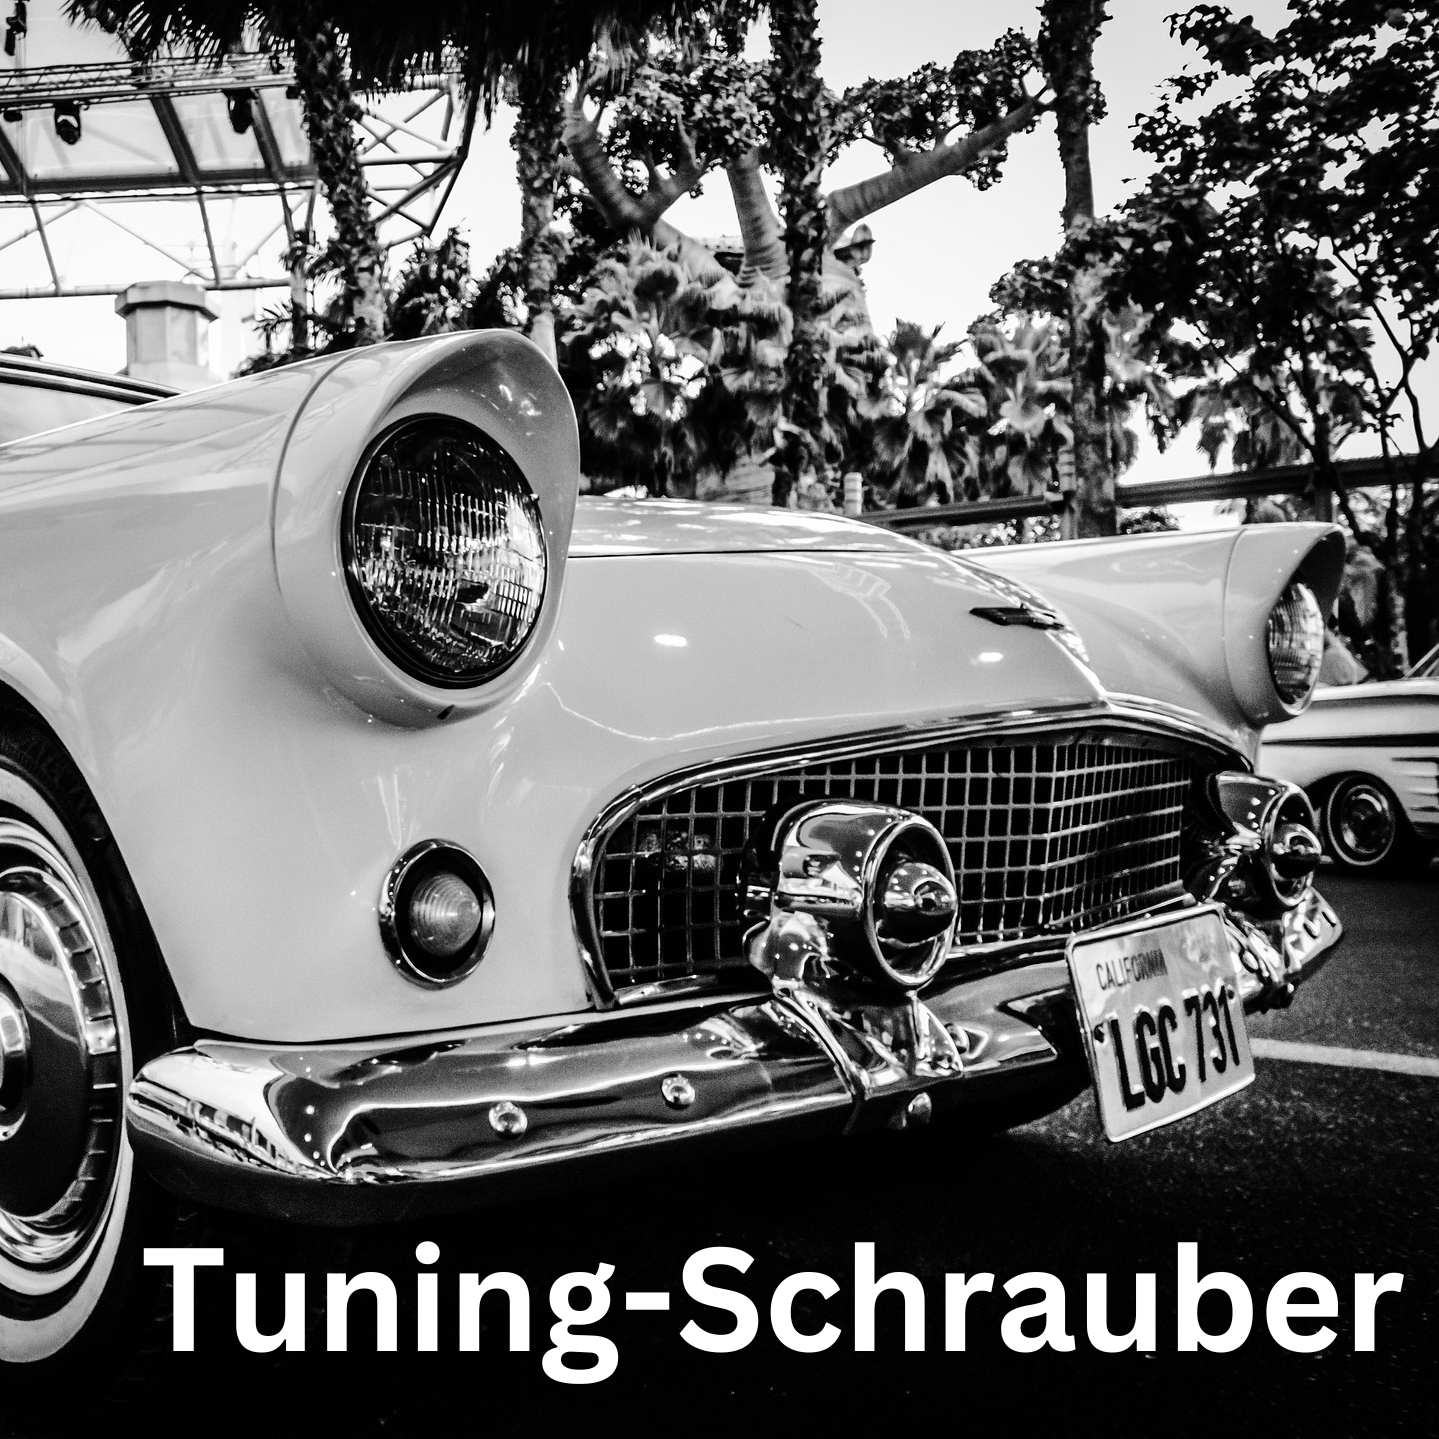 Tuning-Schrauber